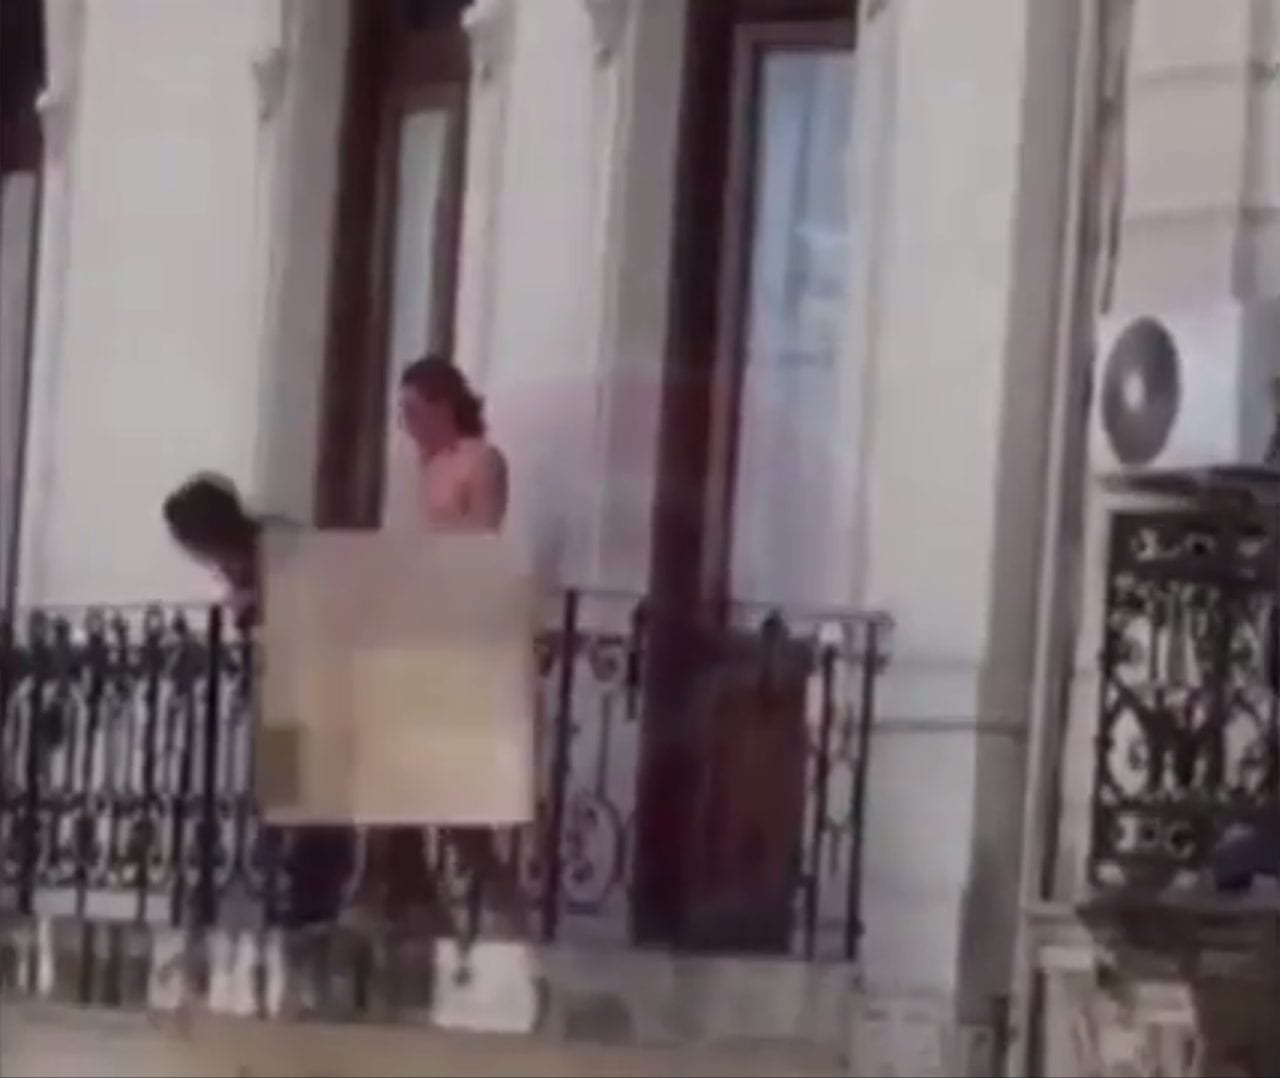 Coppia focosa fa sesso in balcone: la reazione dei passanti lascia tutti a bocca aperta [VIDEO]